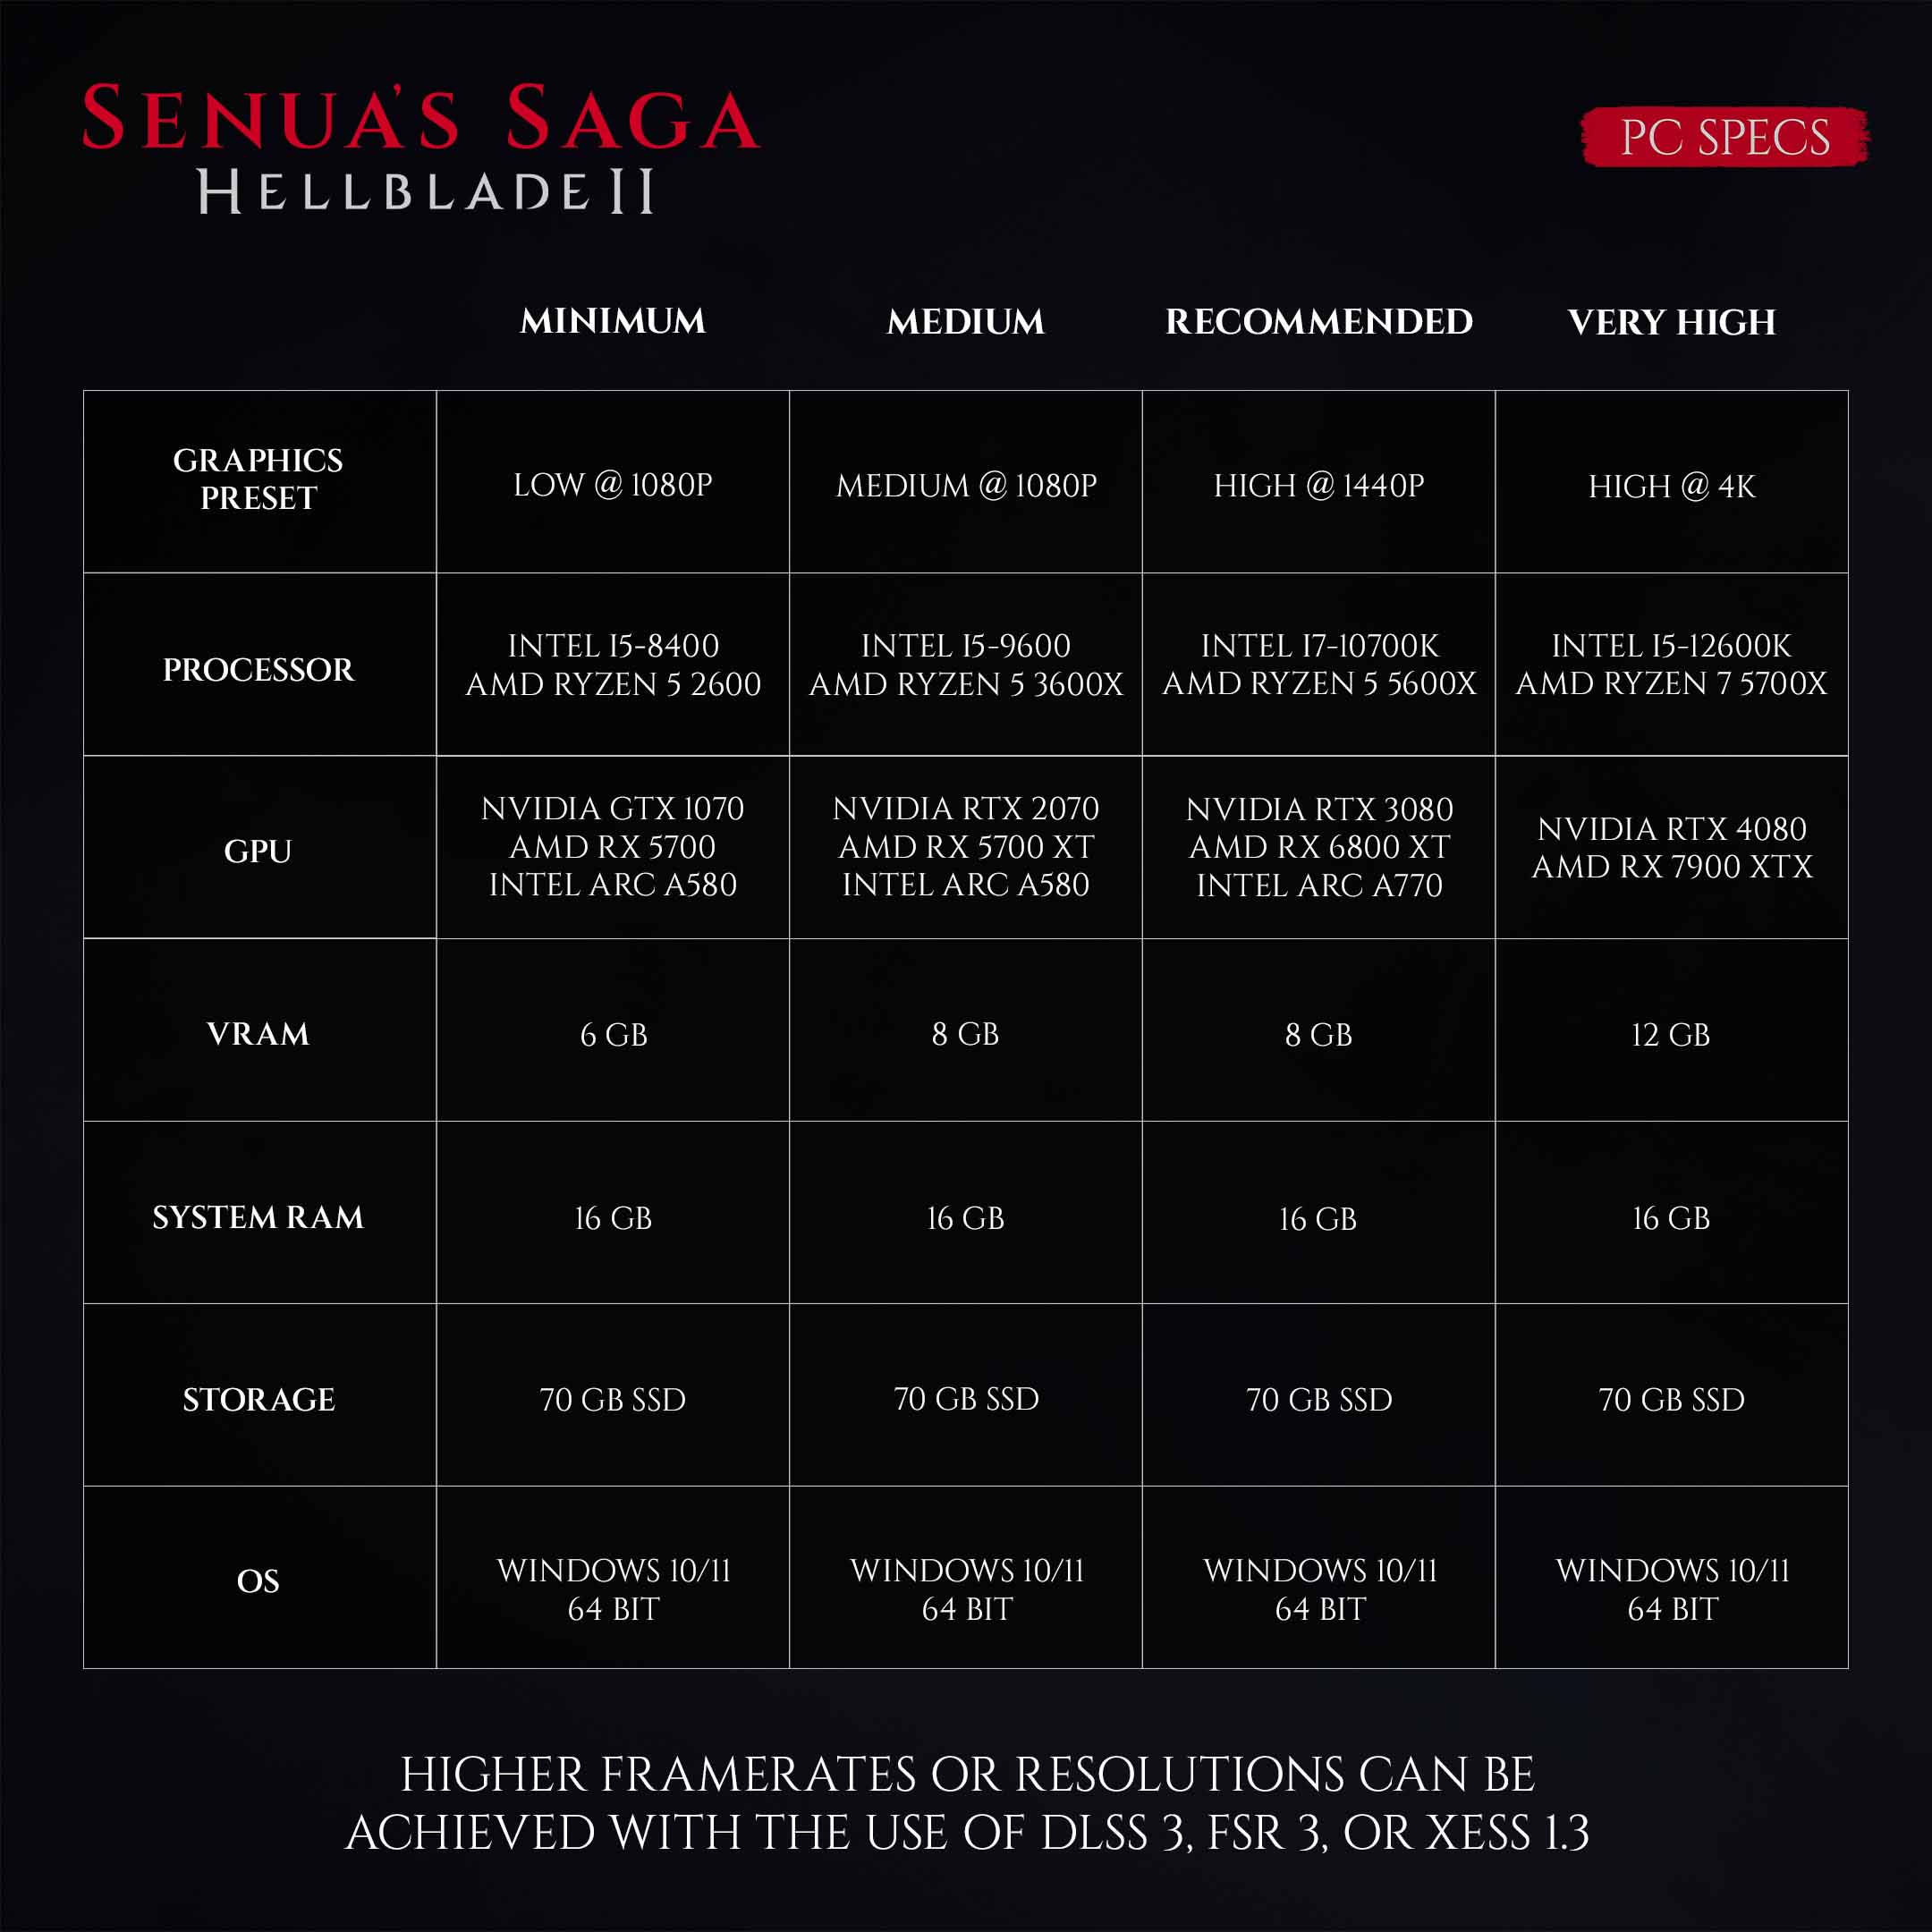 Senua's Saga: Hellblade 2